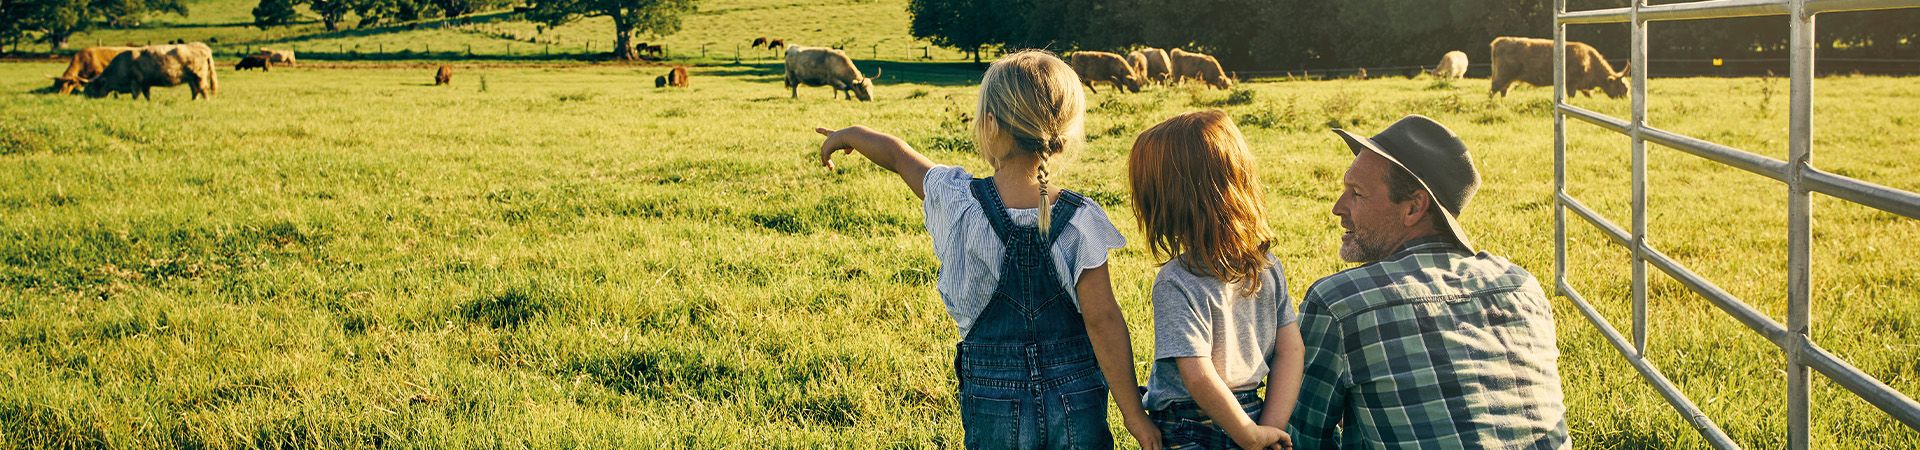 Vacances en famille à la ferme avec animaux : un père et ses enfants observent les vaches dans un champs.